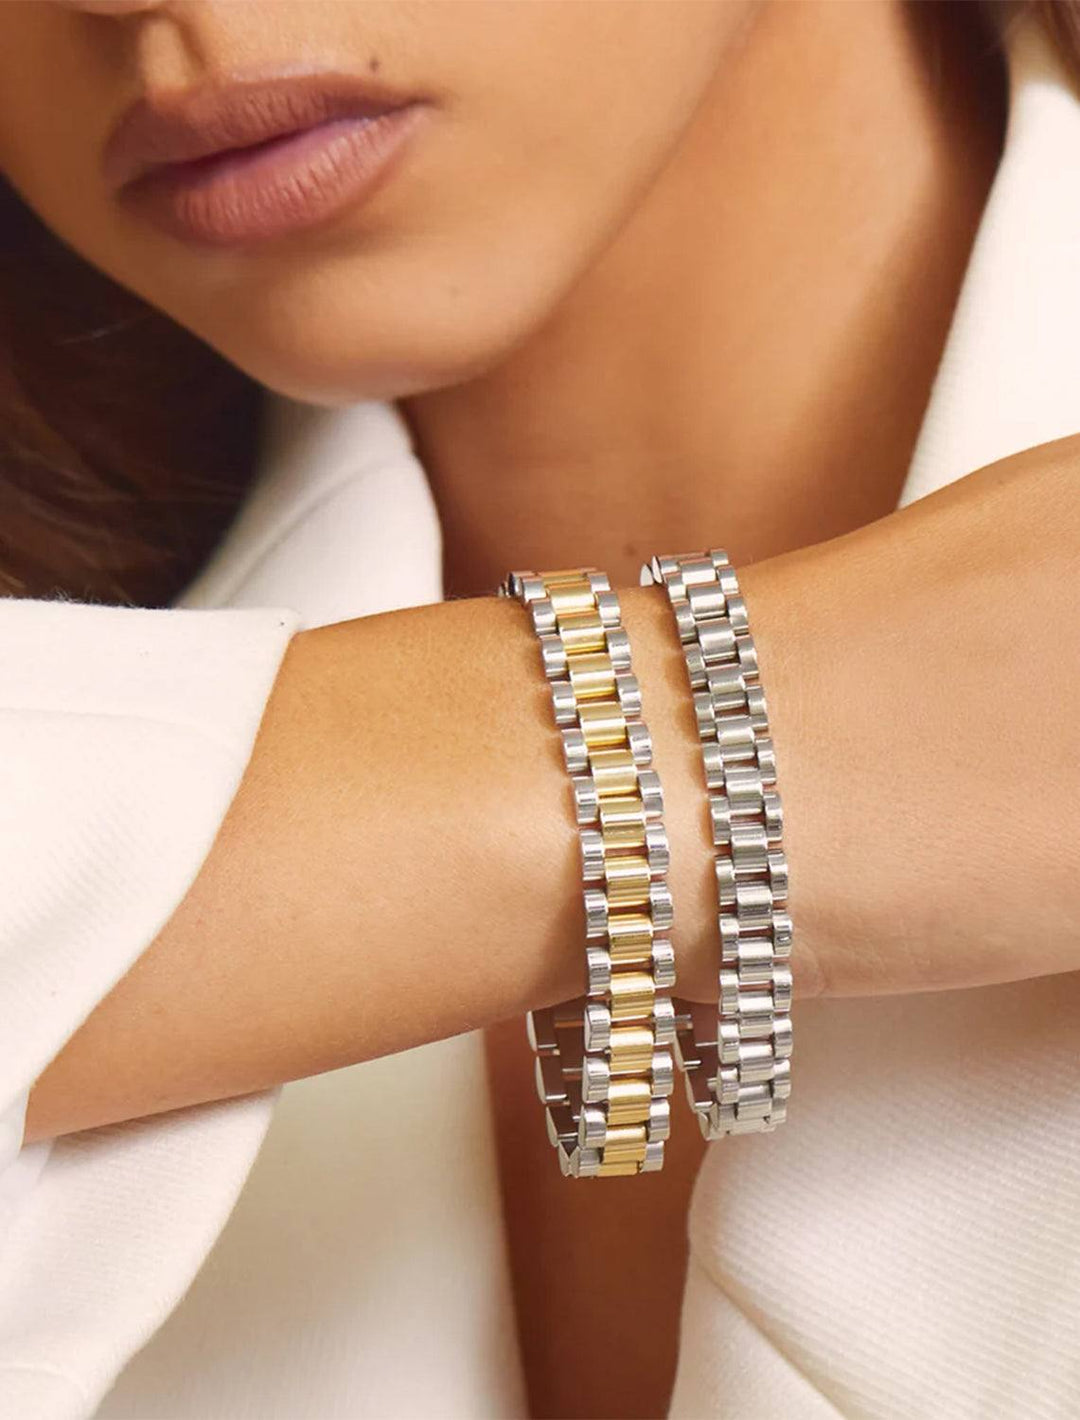 Model wearing two-toned timepiece bracelet